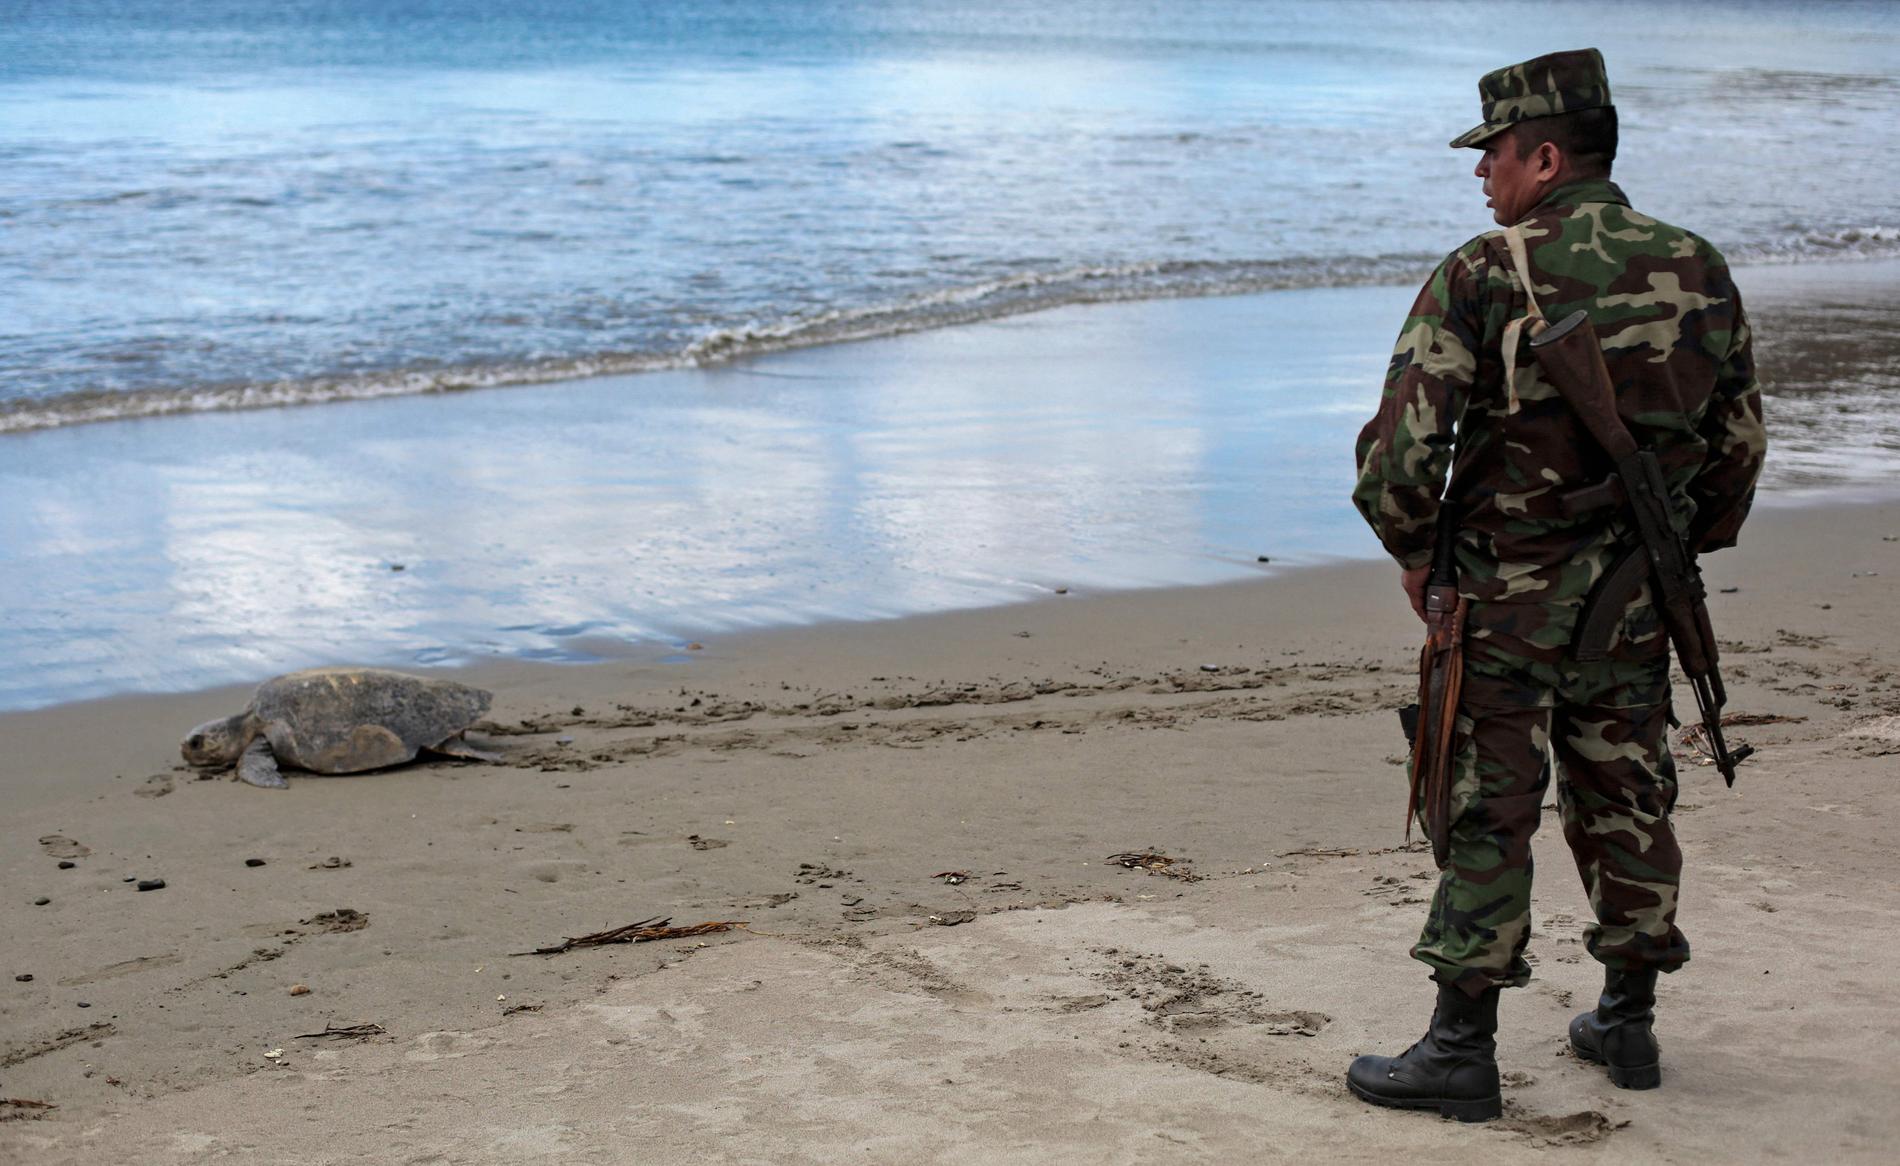 En av de tusentals sköldpaddor som lade ägg på stränder i Nicaragua i helgen, och en av de militärer som var på plats för att skydda dem.